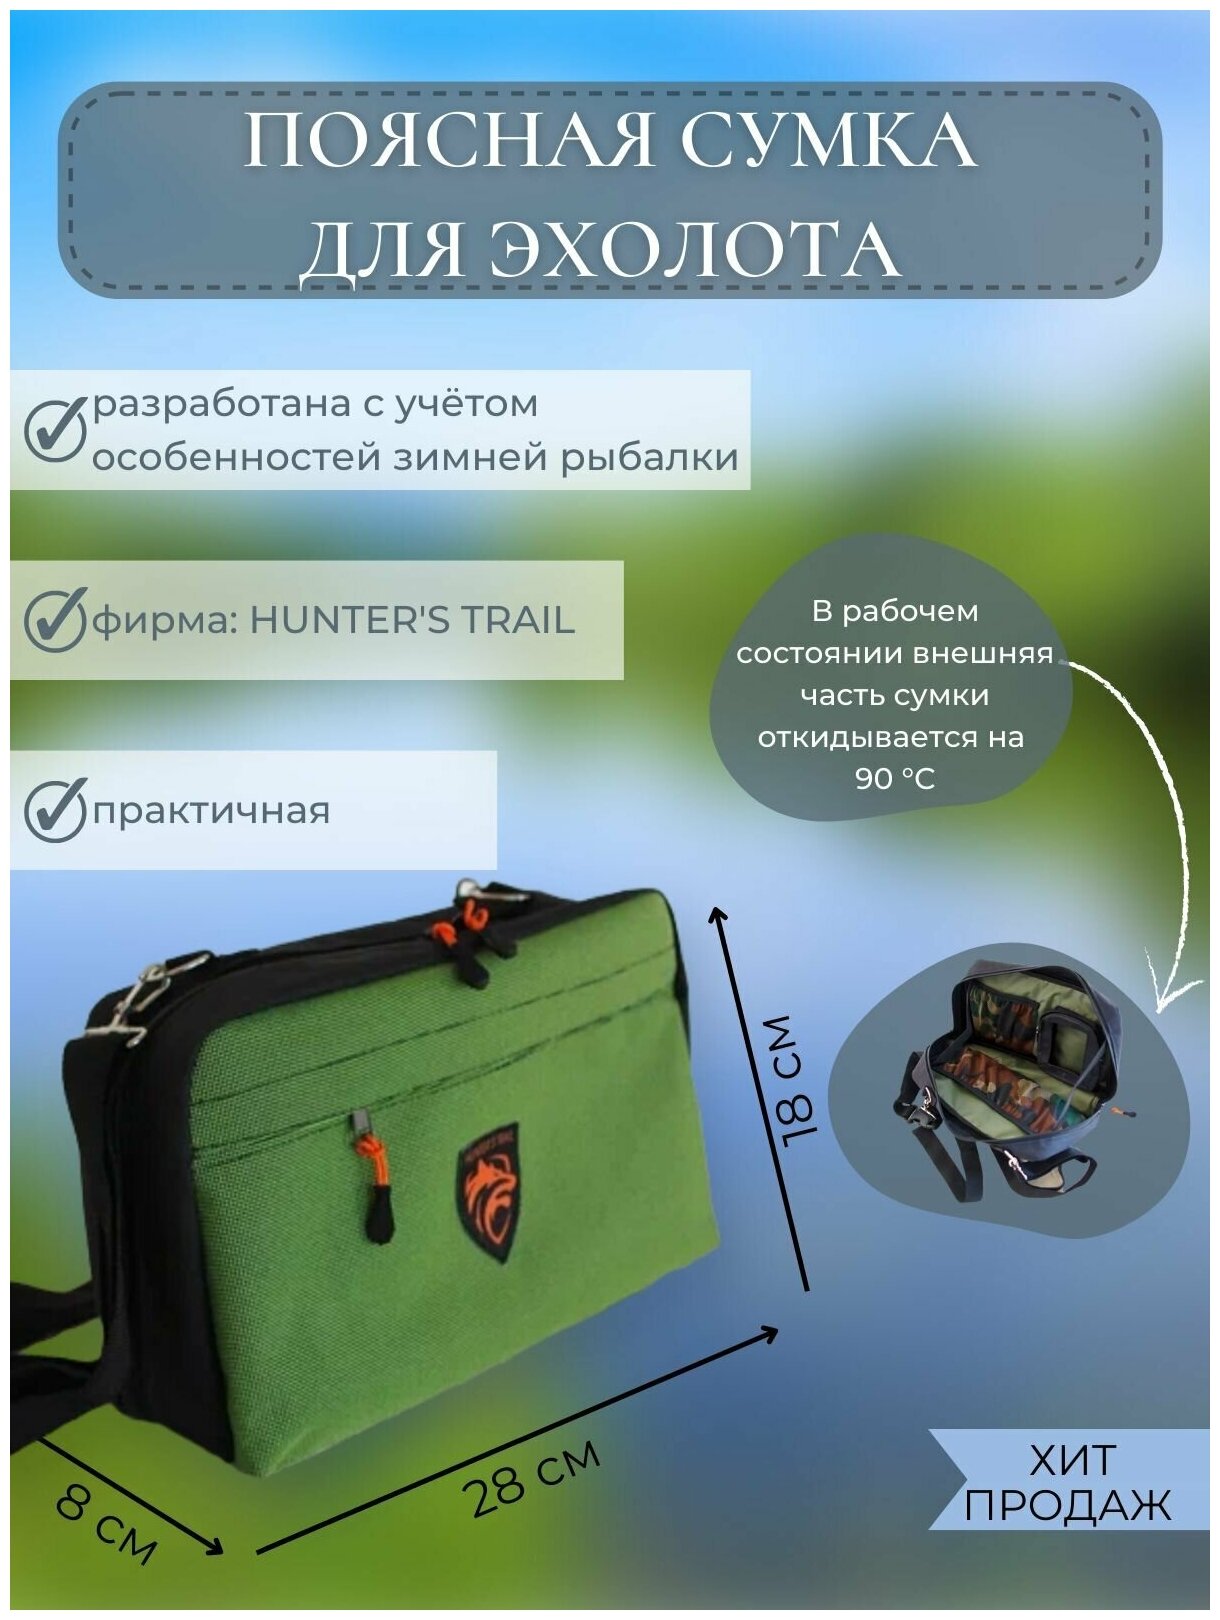 Сумка для эхолота на пояс, качественный универсальный футляр, Практик, Поясная сумка Hunter"s Trail, зеленая